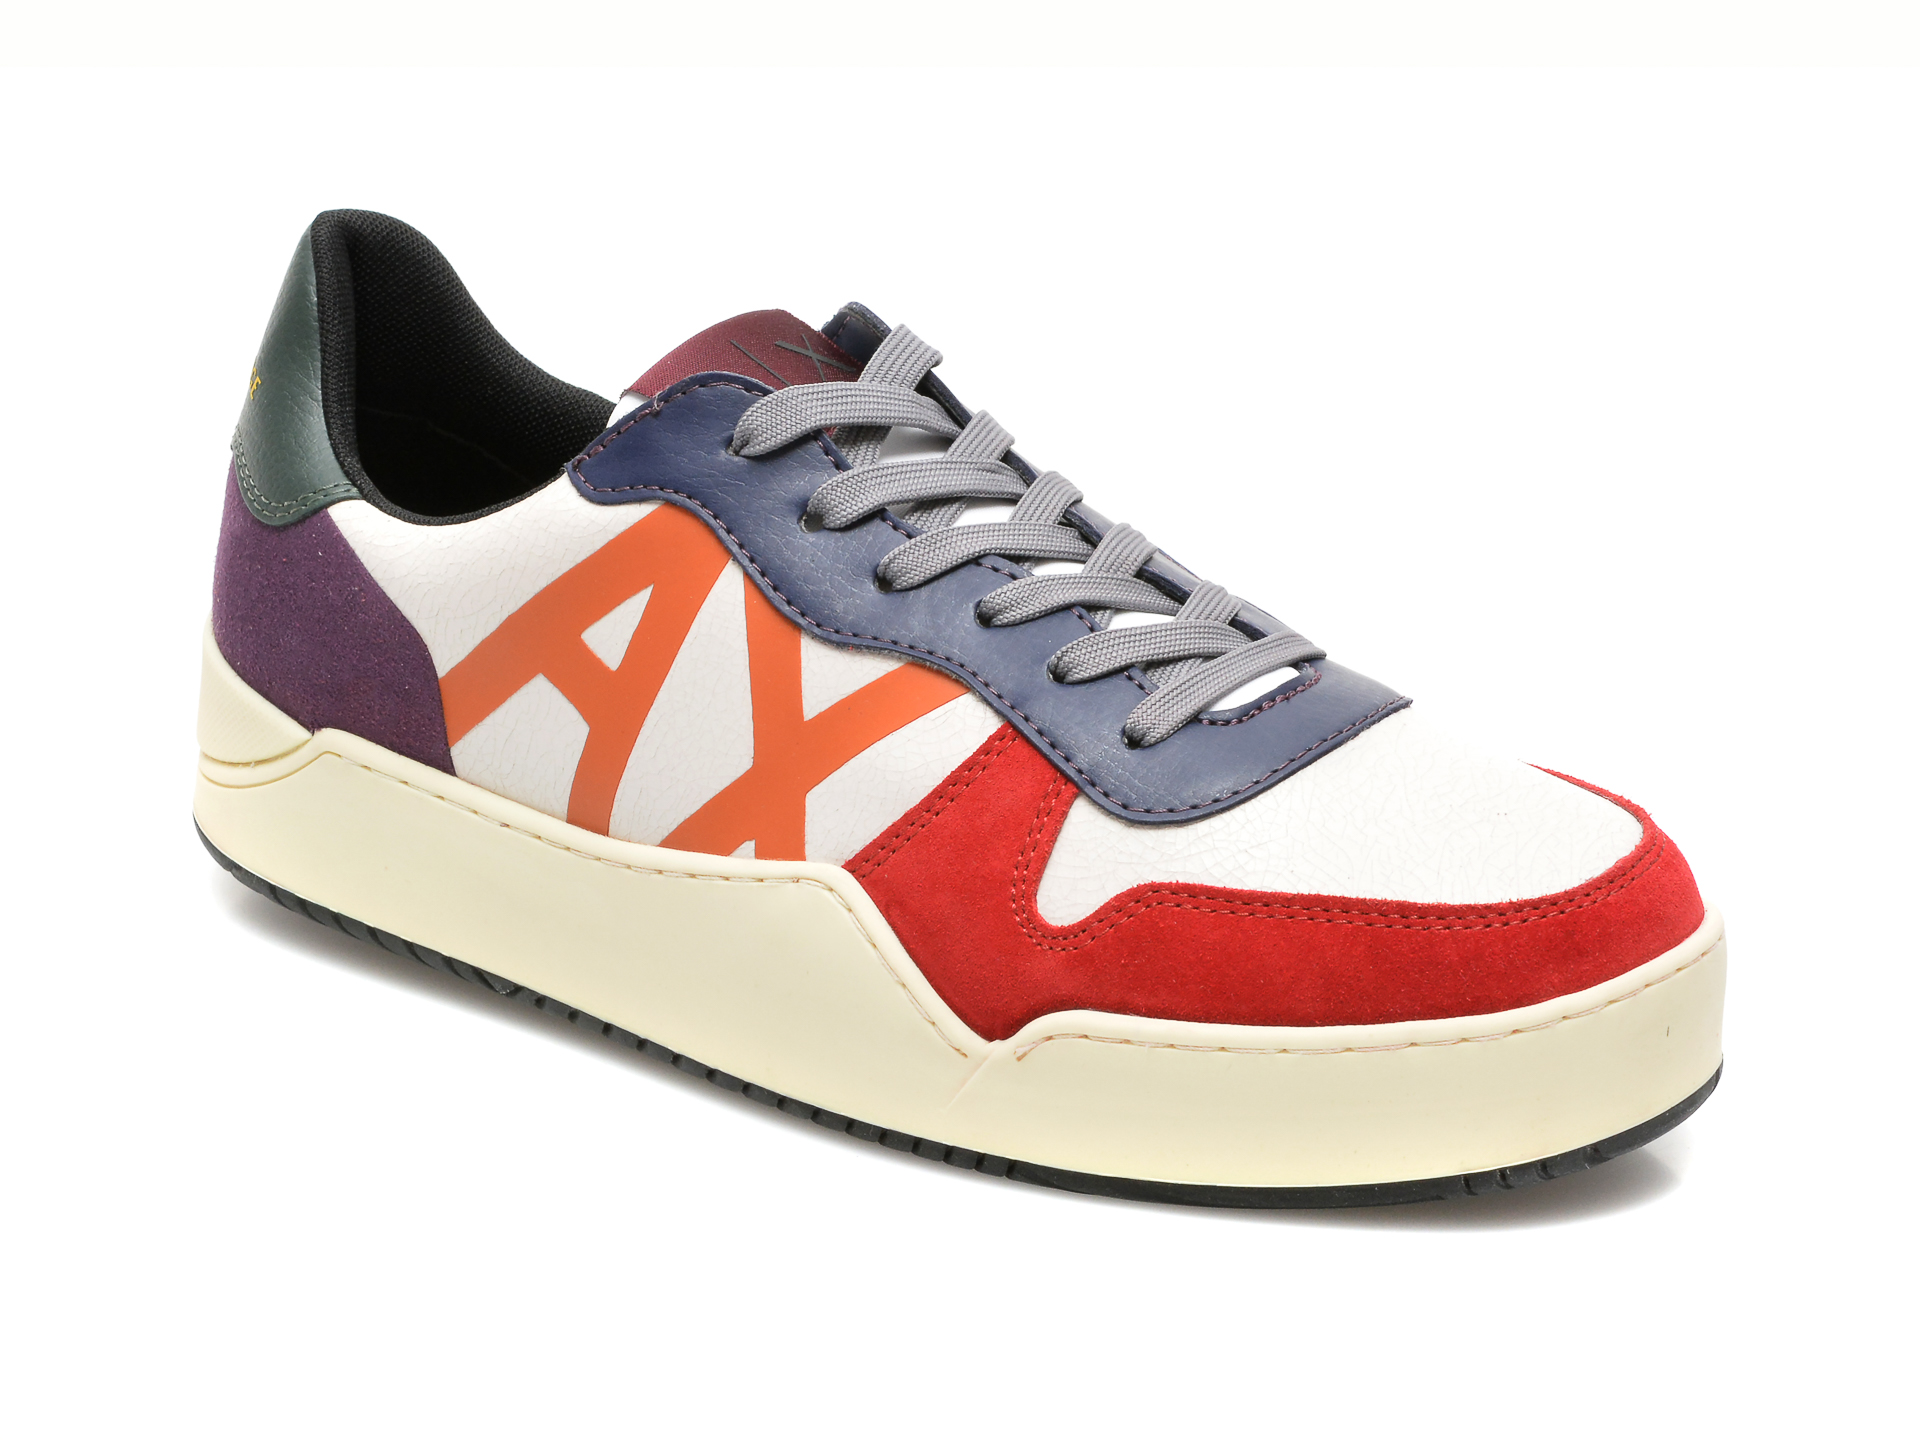 Pantofi sport ARMANI EXCHANGE multicolori, XUX115, din piele naturala Armani Exchange